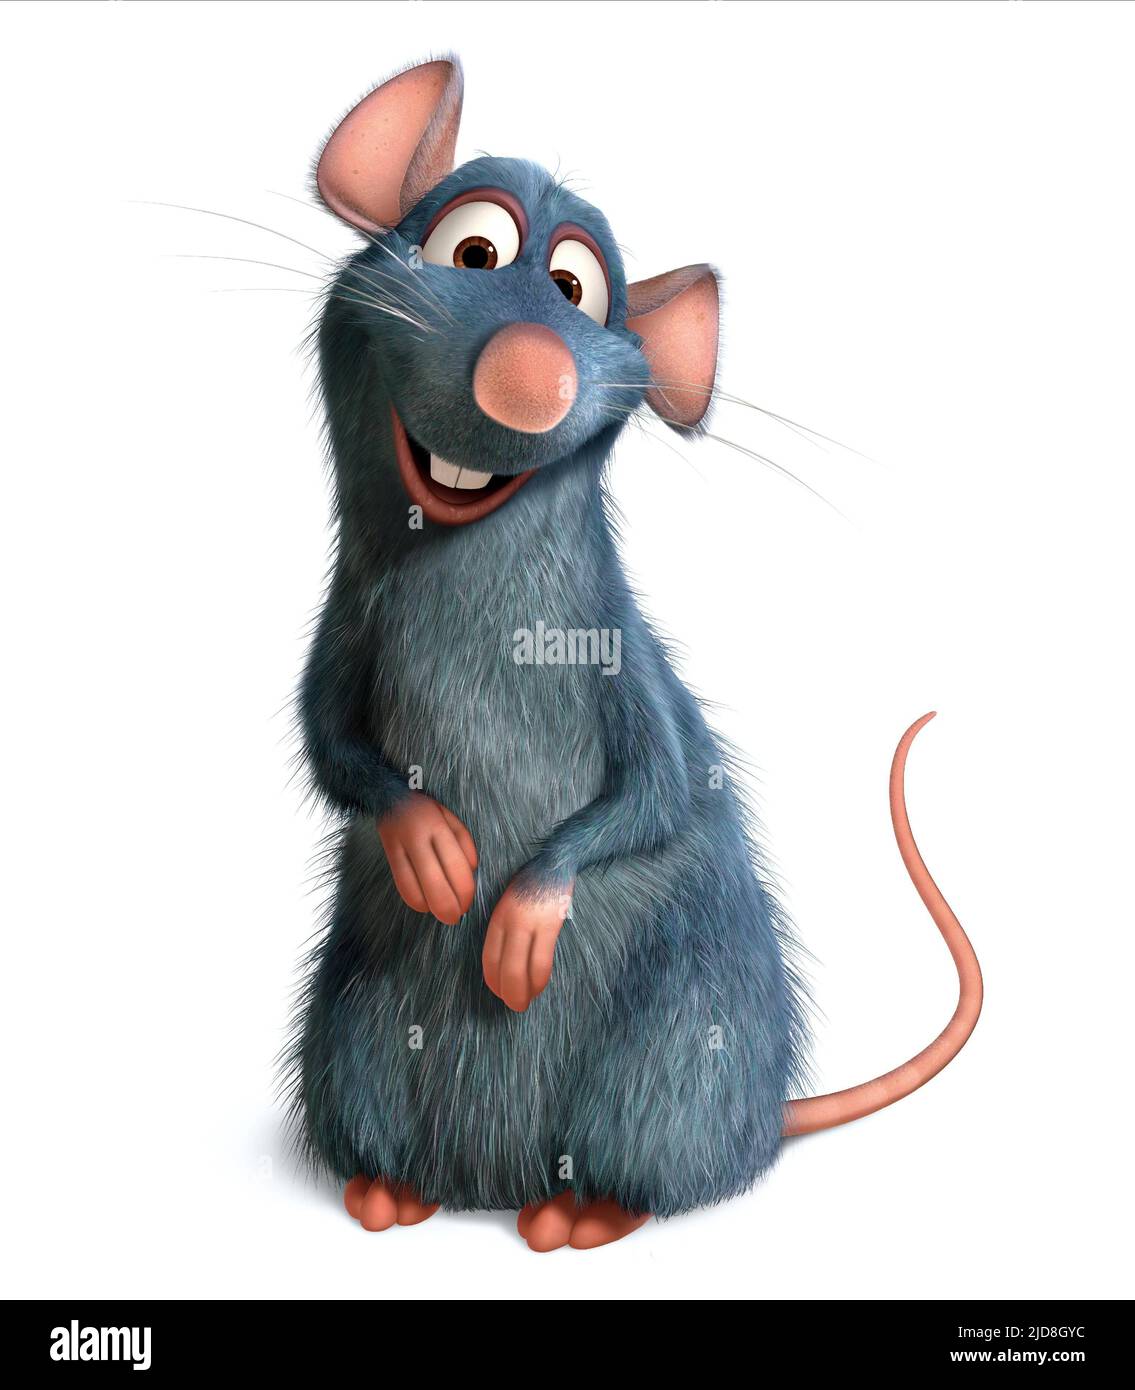 Ratatouille remy immagini e fotografie stock ad alta risoluzione - Alamy